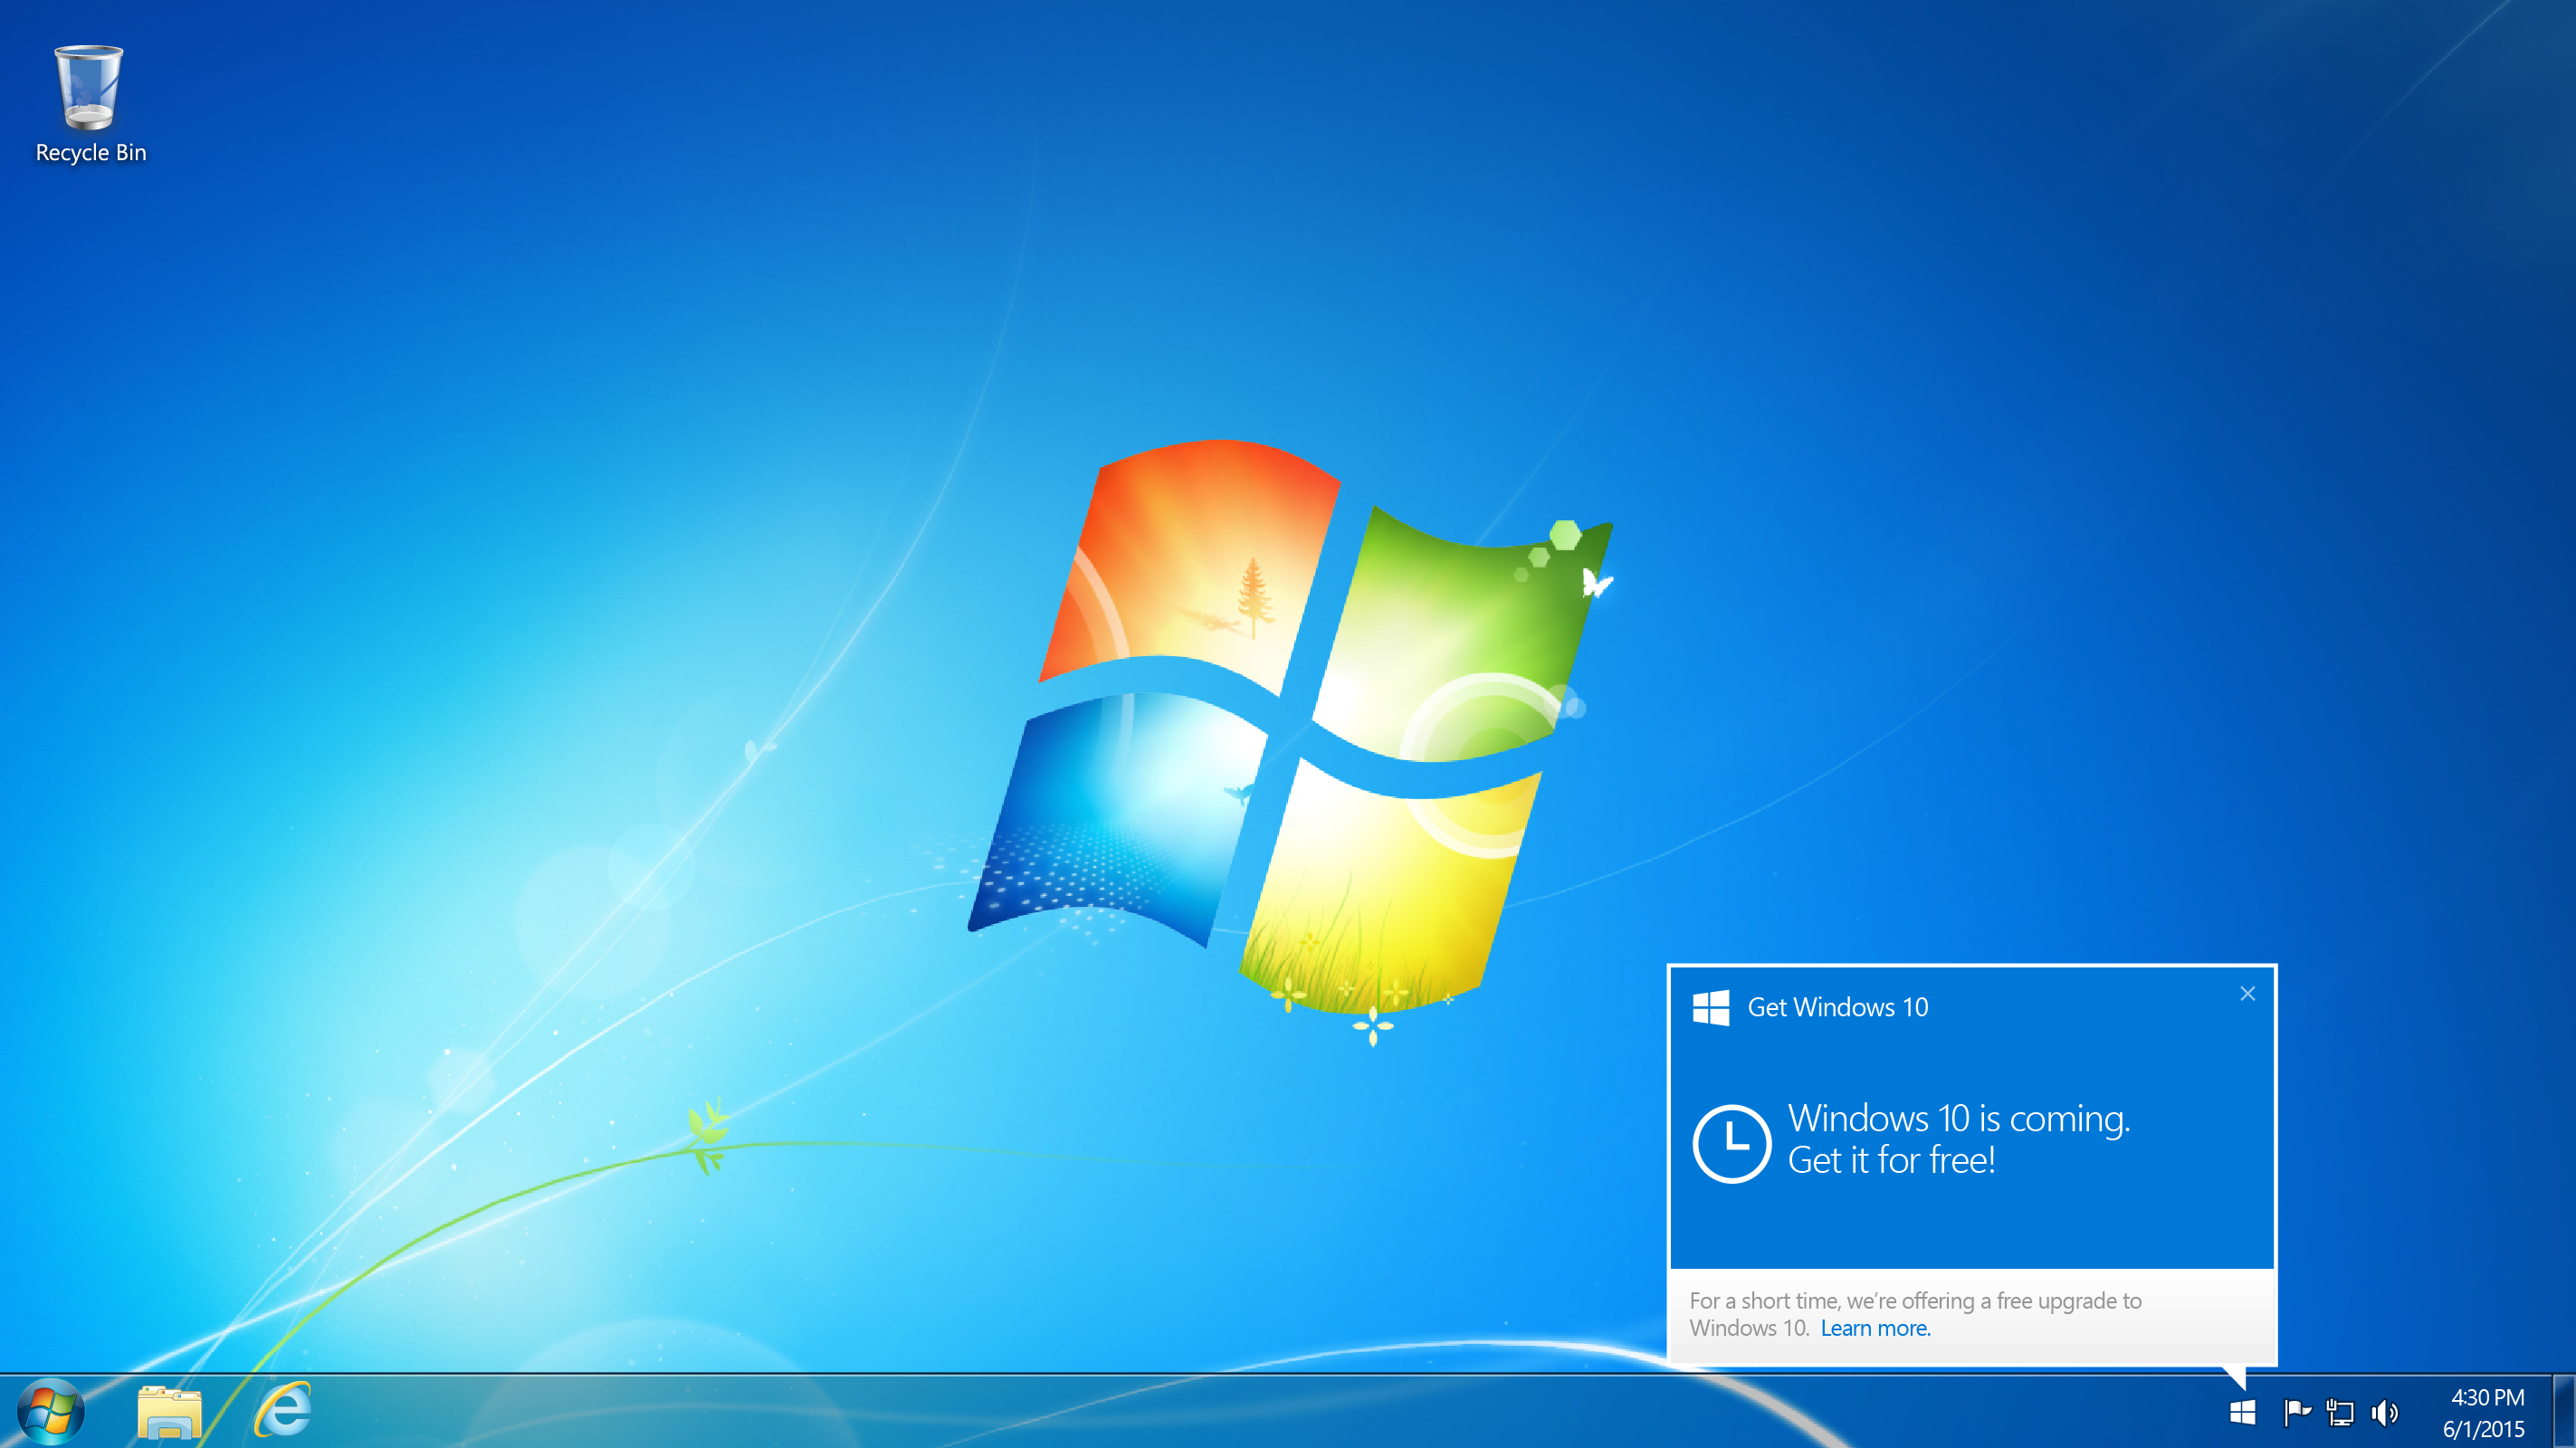 ไมโครซอฟท์ประกาศ Windows 10 มาแน่ 29 ก.ค. นี้ !